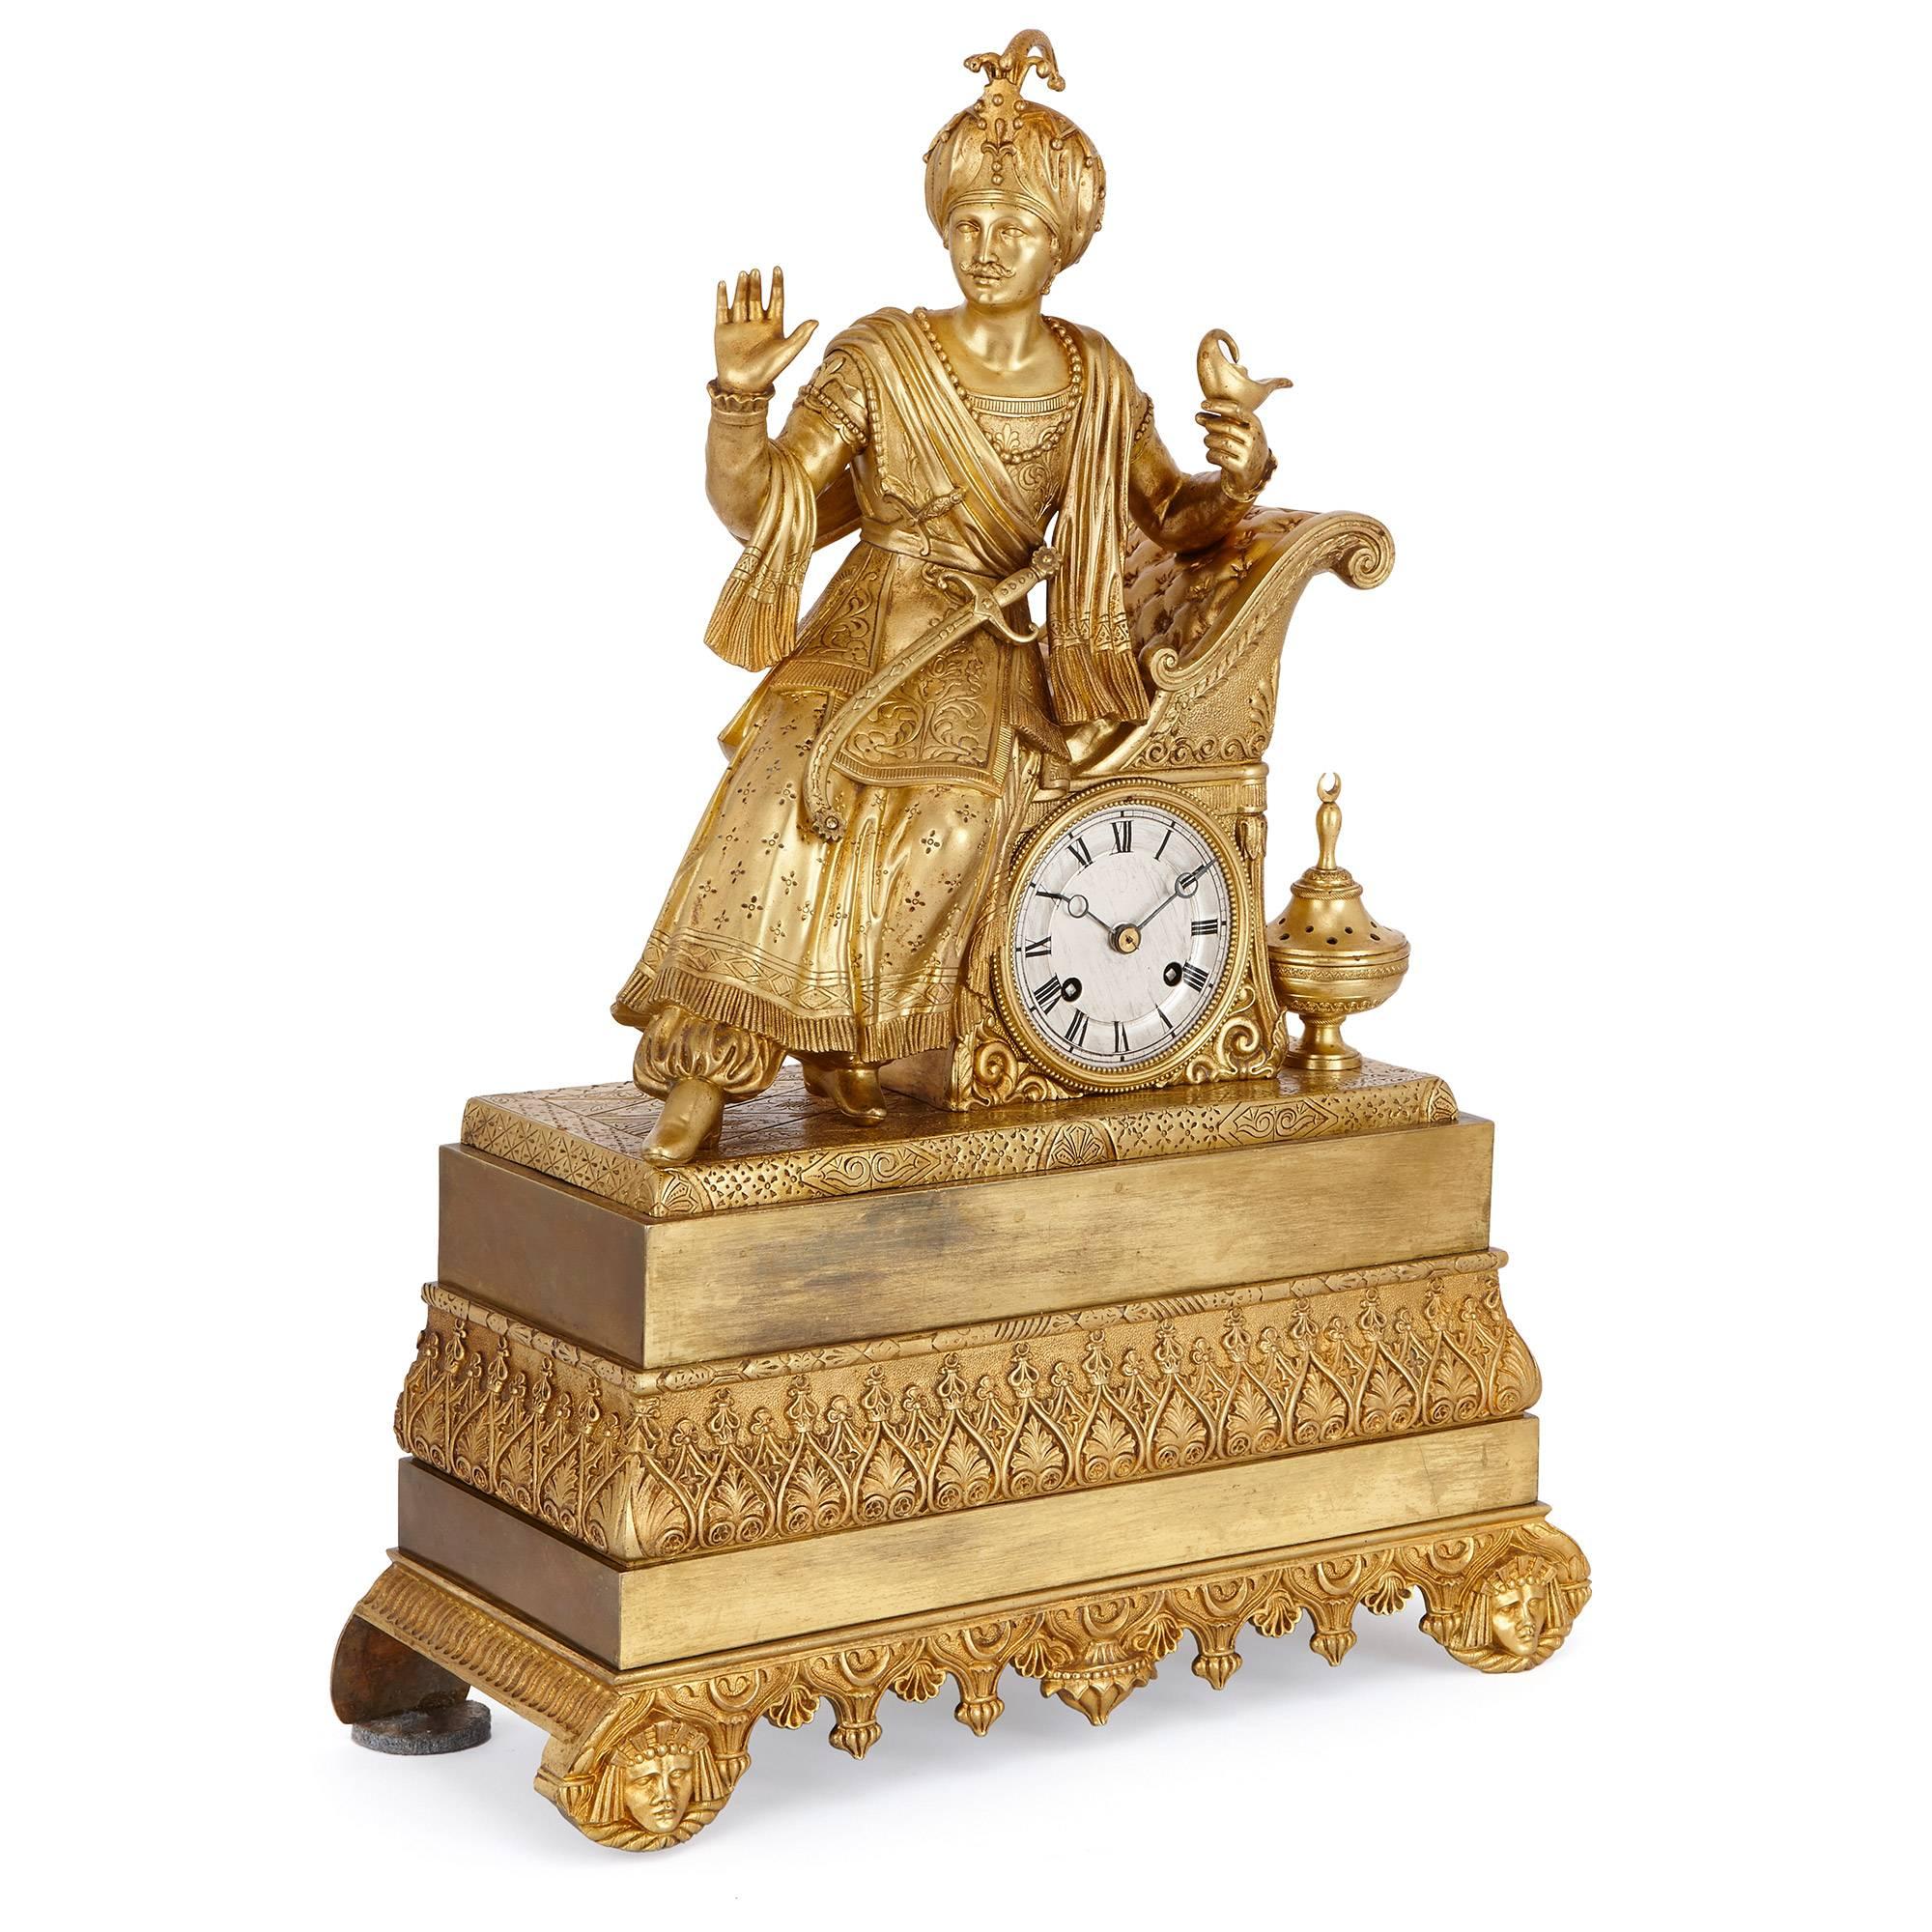 Cette horloge de cheminée saisissante et très détaillée est entièrement réalisée en bronze doré et est surmontée de la figure d'un noble oriental. Il porte des vêtements typiques de son lieu et de son époque : des robes finement détaillées, une épée